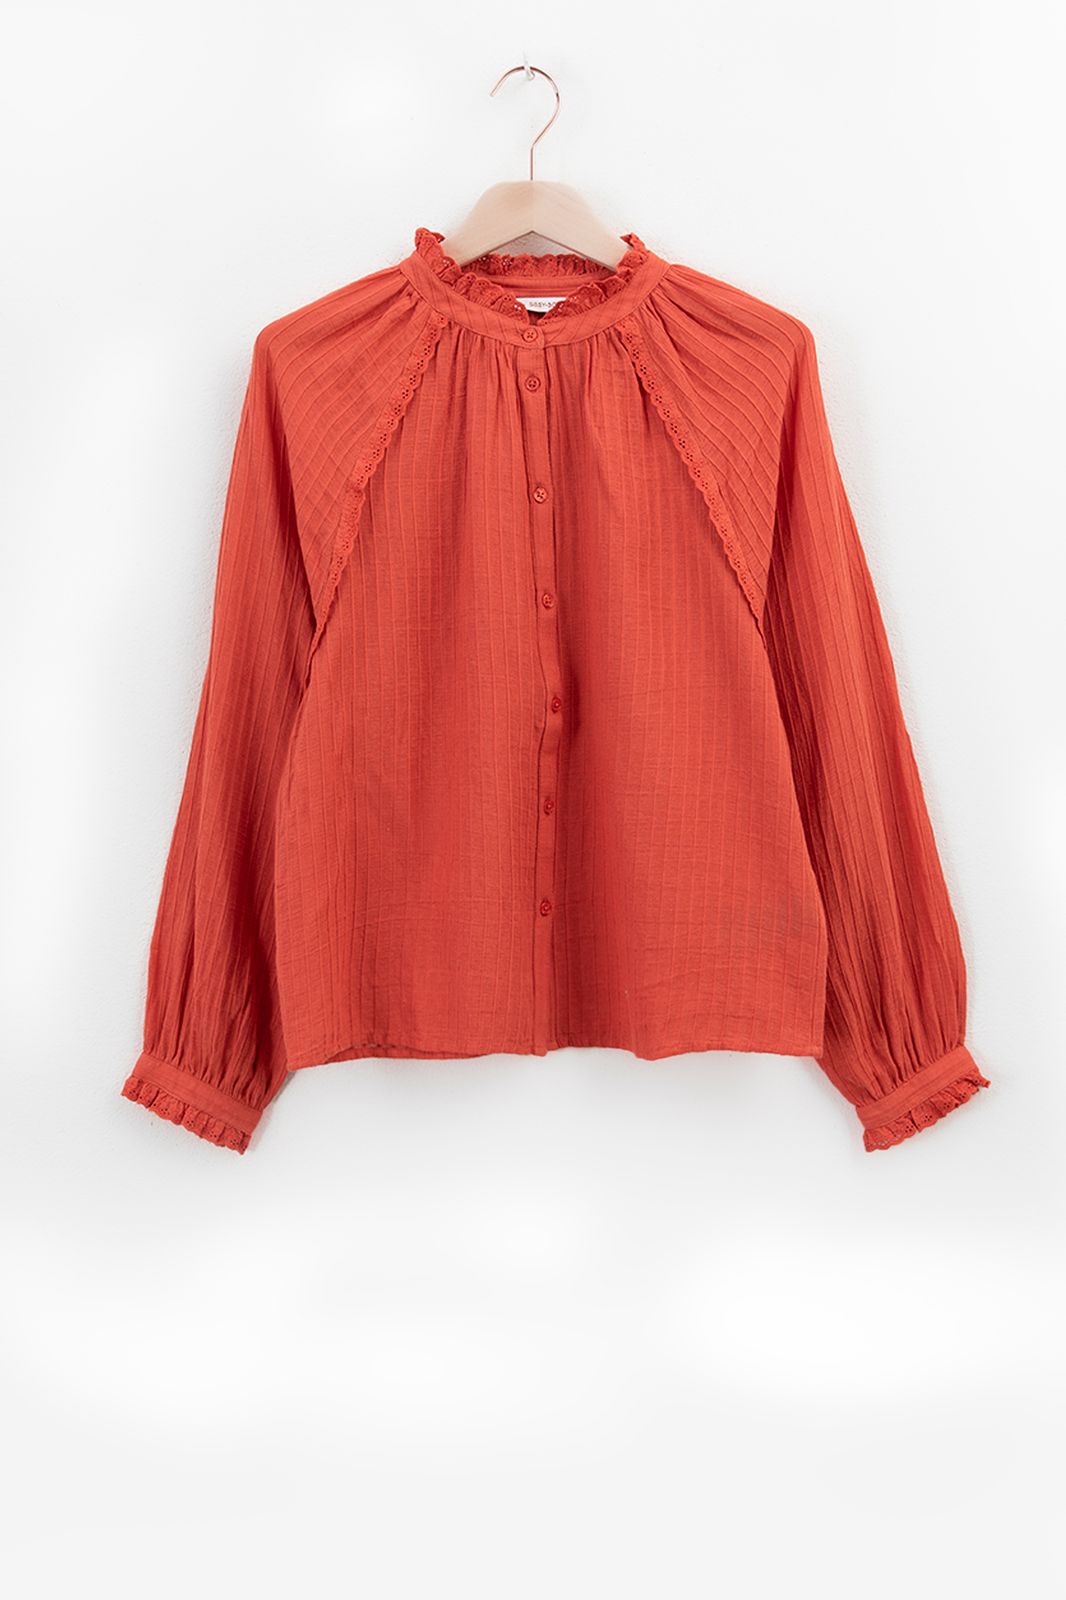 Rode blouse met kanten details